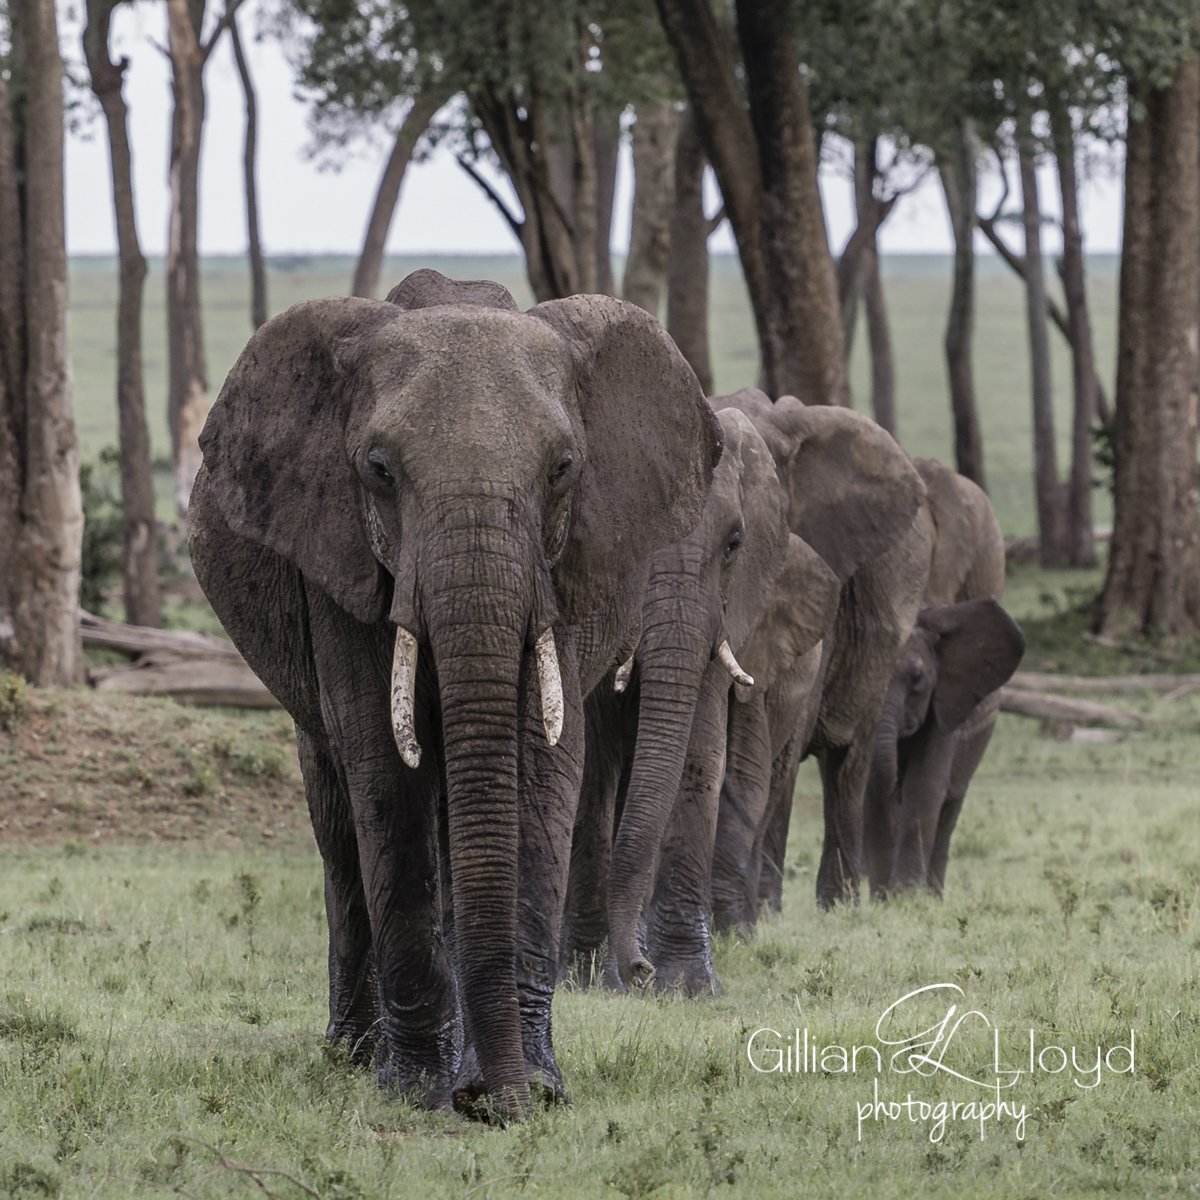 No one needs an Elephant Tusk other than an Elephant.  #worldelephantday2018 #elephants #worldelephantday #davidsheldrickwildlifetrust @worldelephantday Sign pledge at worldelephantday.org
@wrldelephantday #elephants #StandWithSTAE #movinggiants #worthmorealive #loveelephants